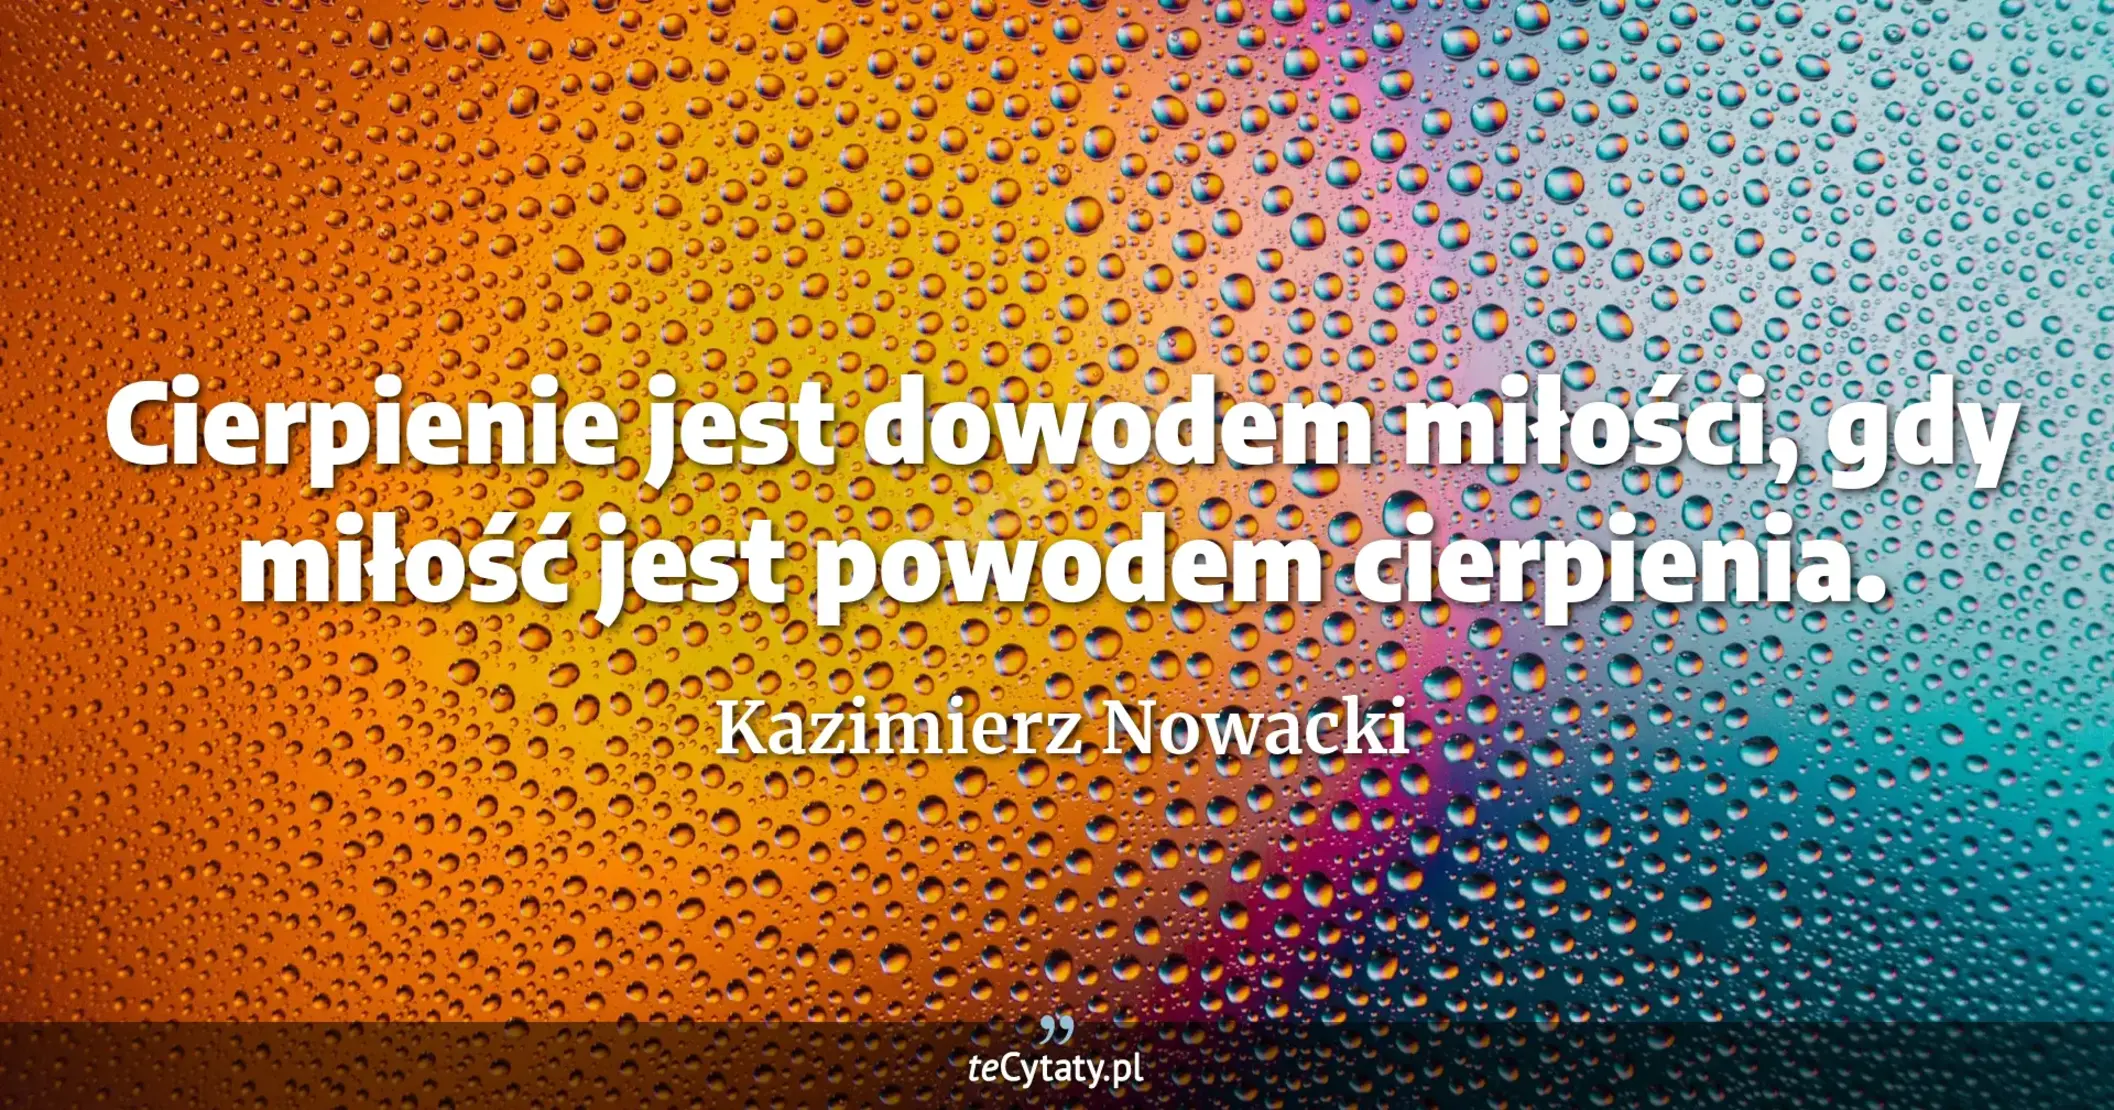 Cierpienie jest dowodem miłości, gdy miłość jest powodem cierpienia. - Kazimierz Nowacki